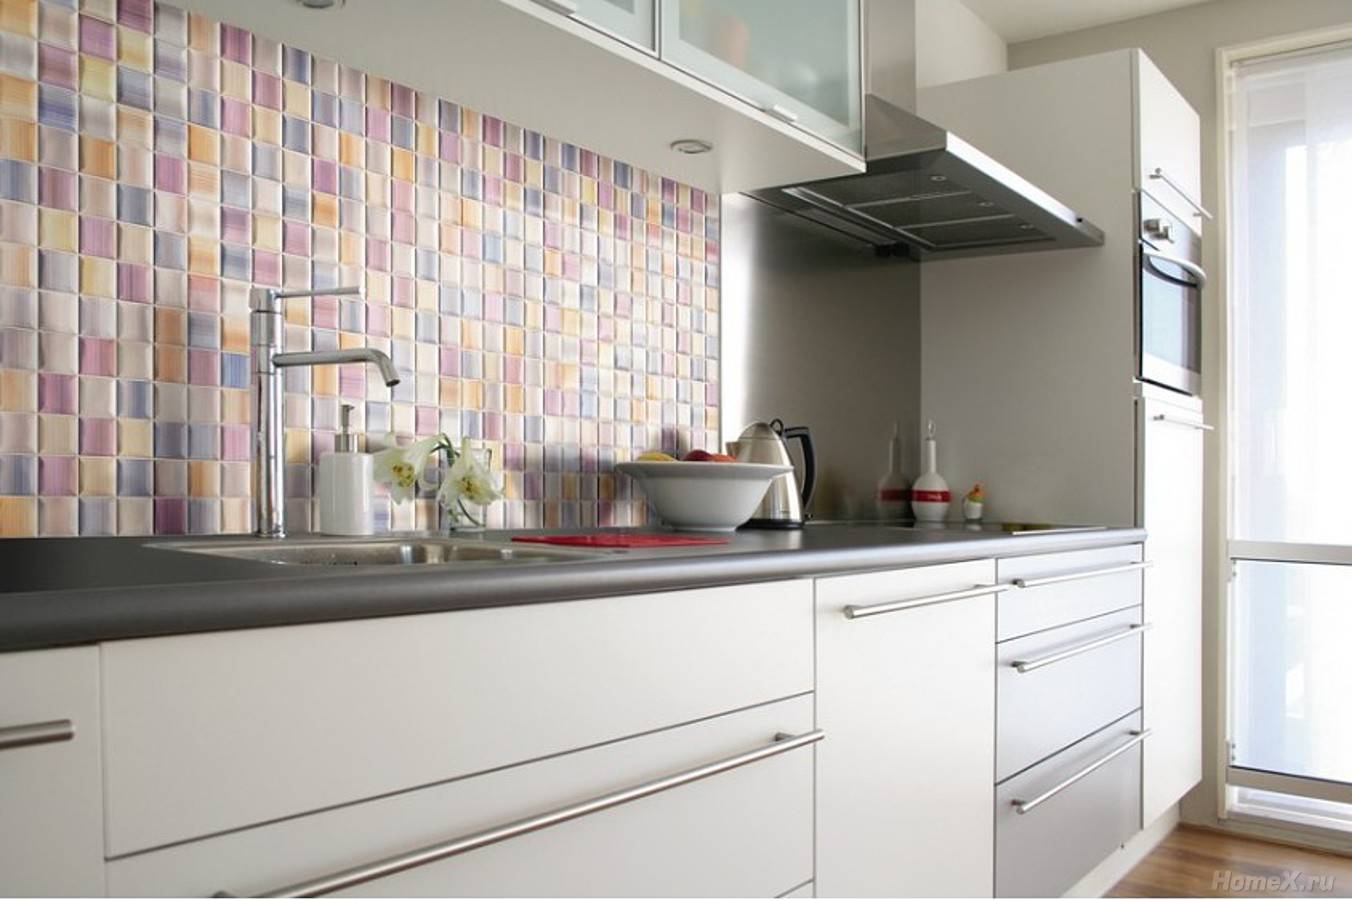 Стеклянная мозаика для кухни на фартук: зеркальная мелкая мозаичная плитка для кухонного